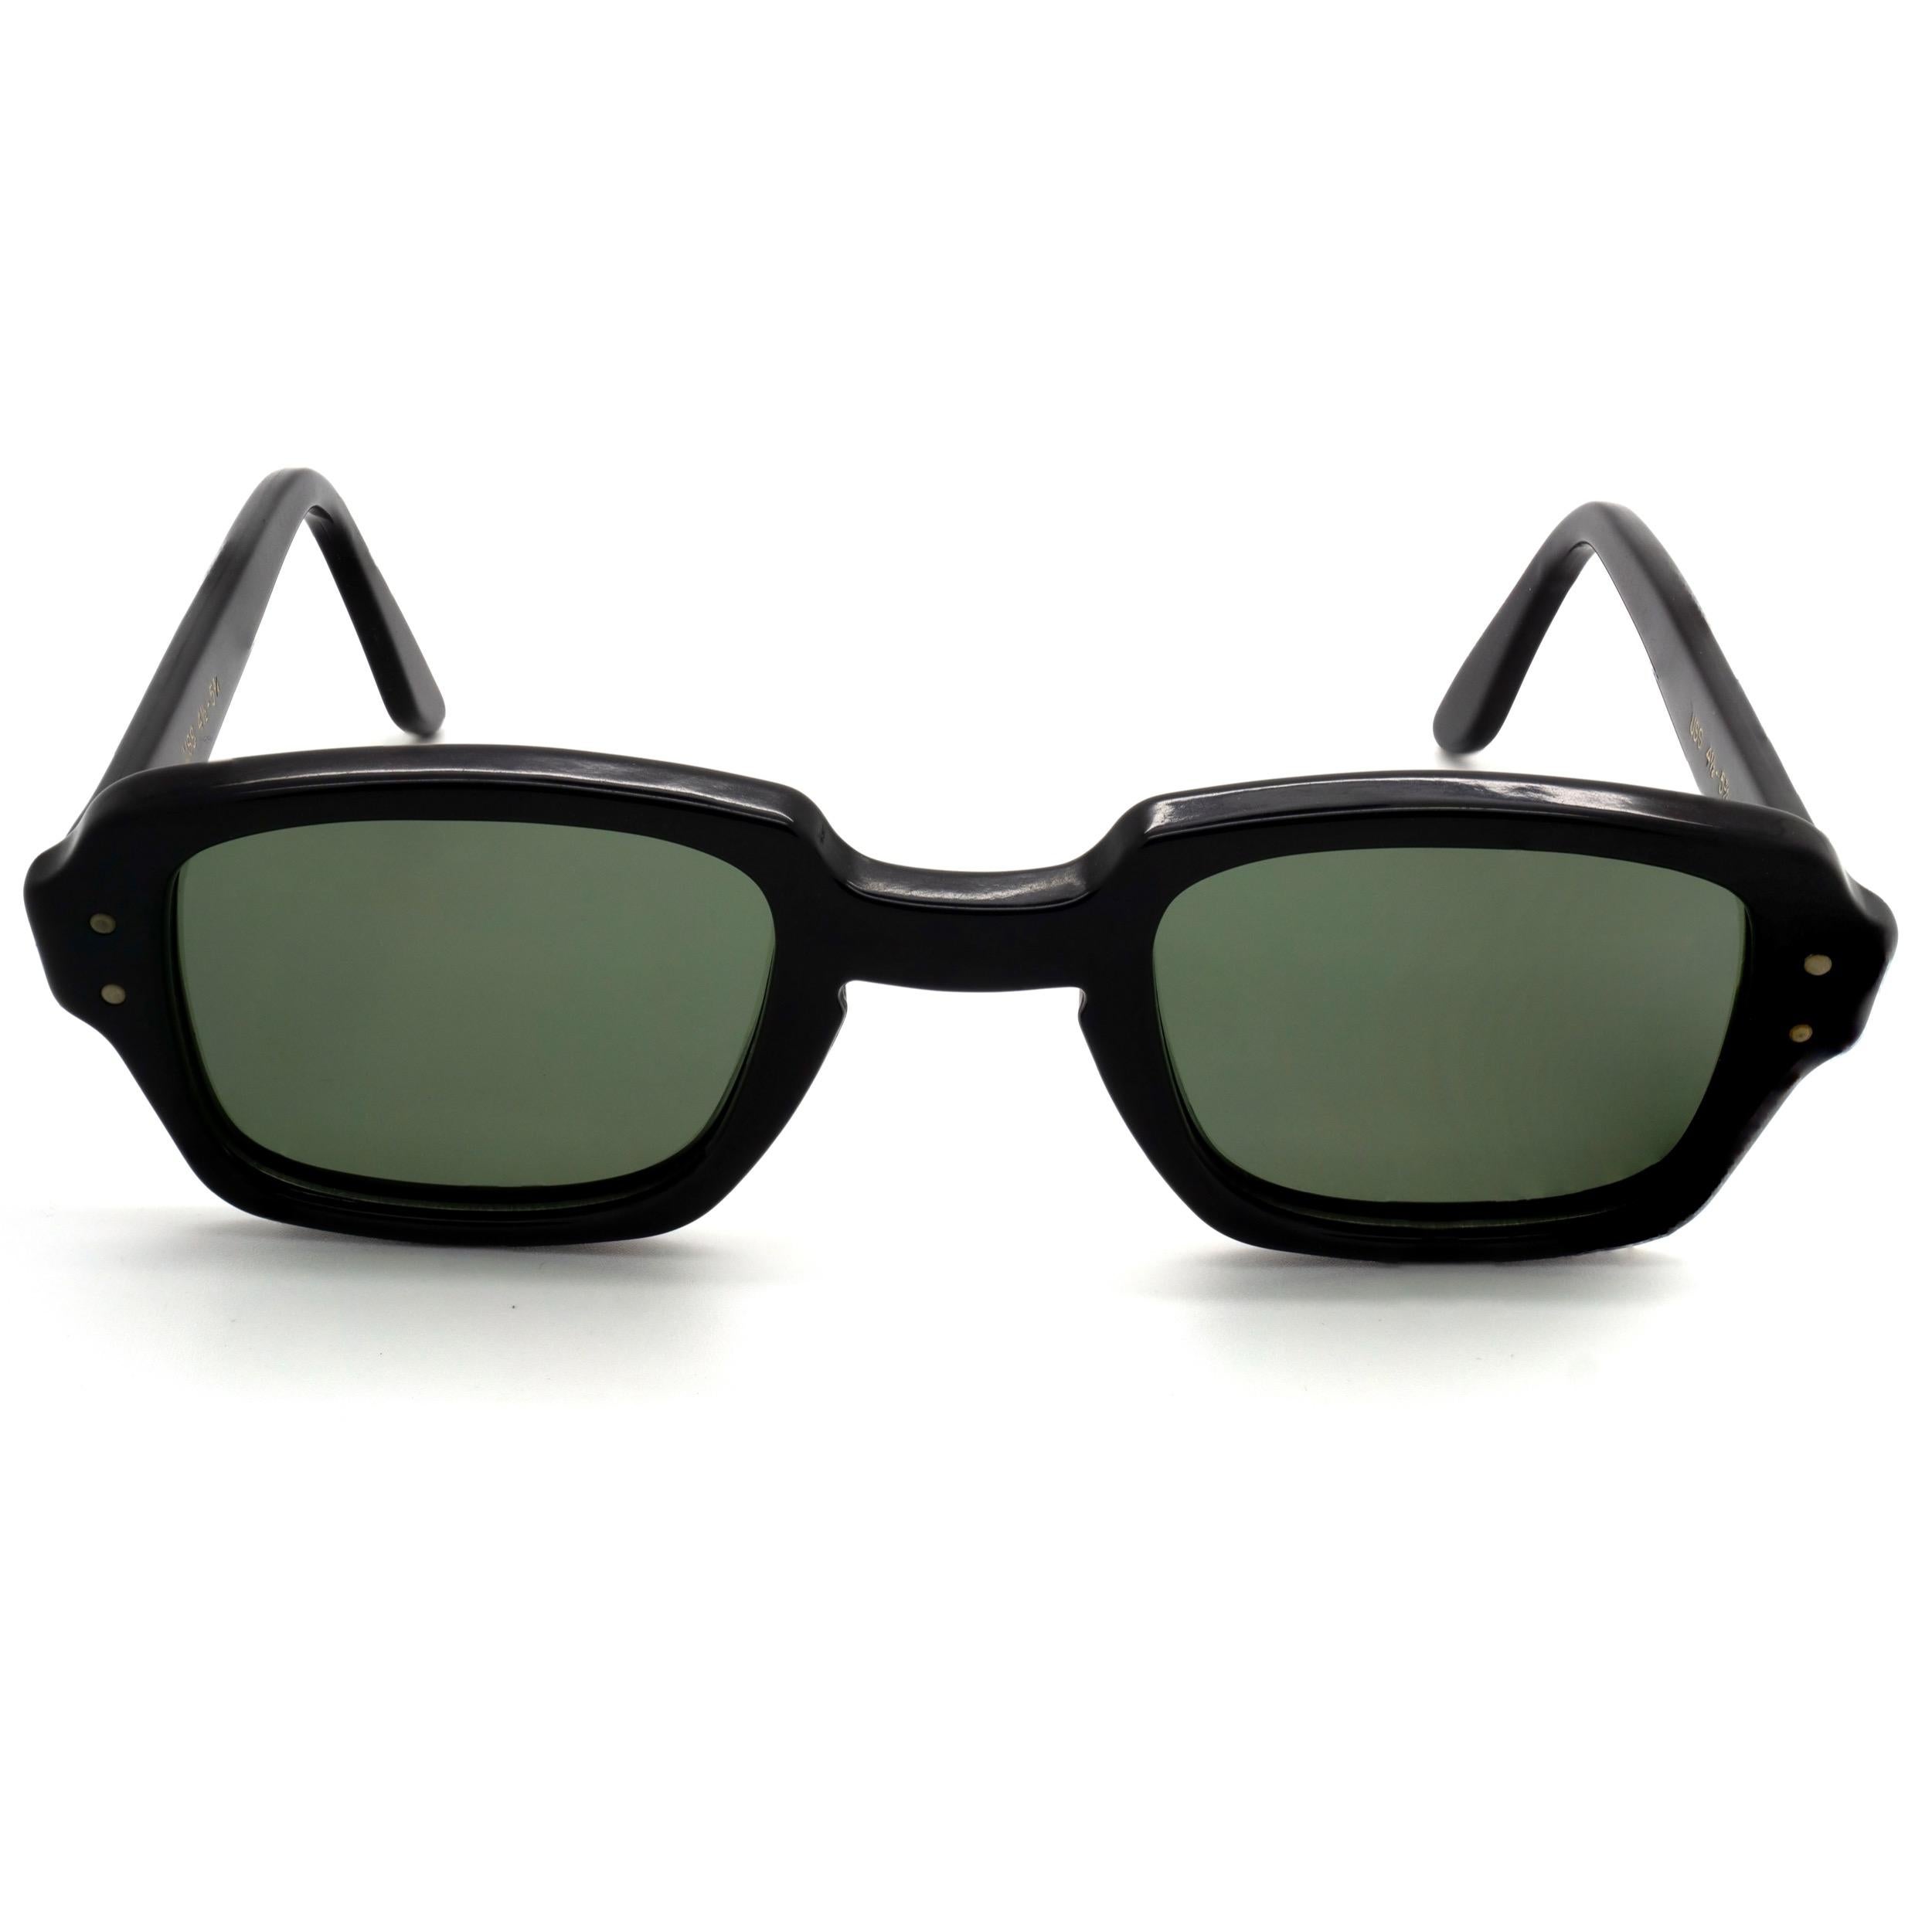 Montures de lunettes Romco BCG Military Issue avec verres polarisants produites par l'armée américaine aux États-Unis depuis les années 1960. Des lunettes emblématiques que l'Amérique ne fabrique plus.

MARQUE : US Army
MODÈLE : Romco Noir
MADE IN :